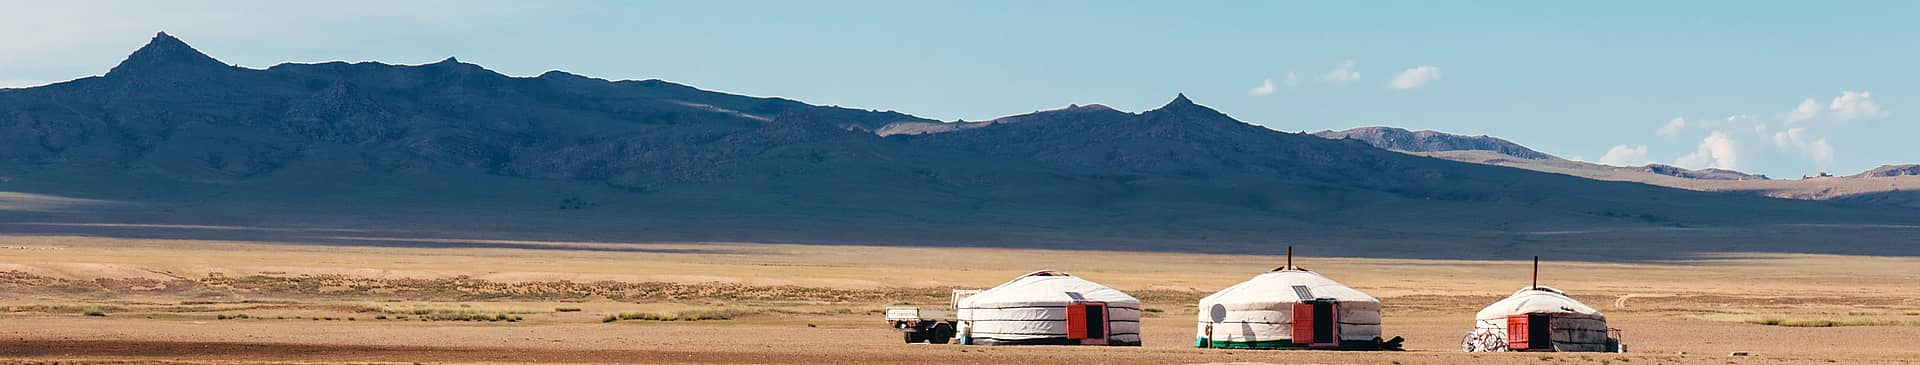 Viaggi nel deserto in Mongolia